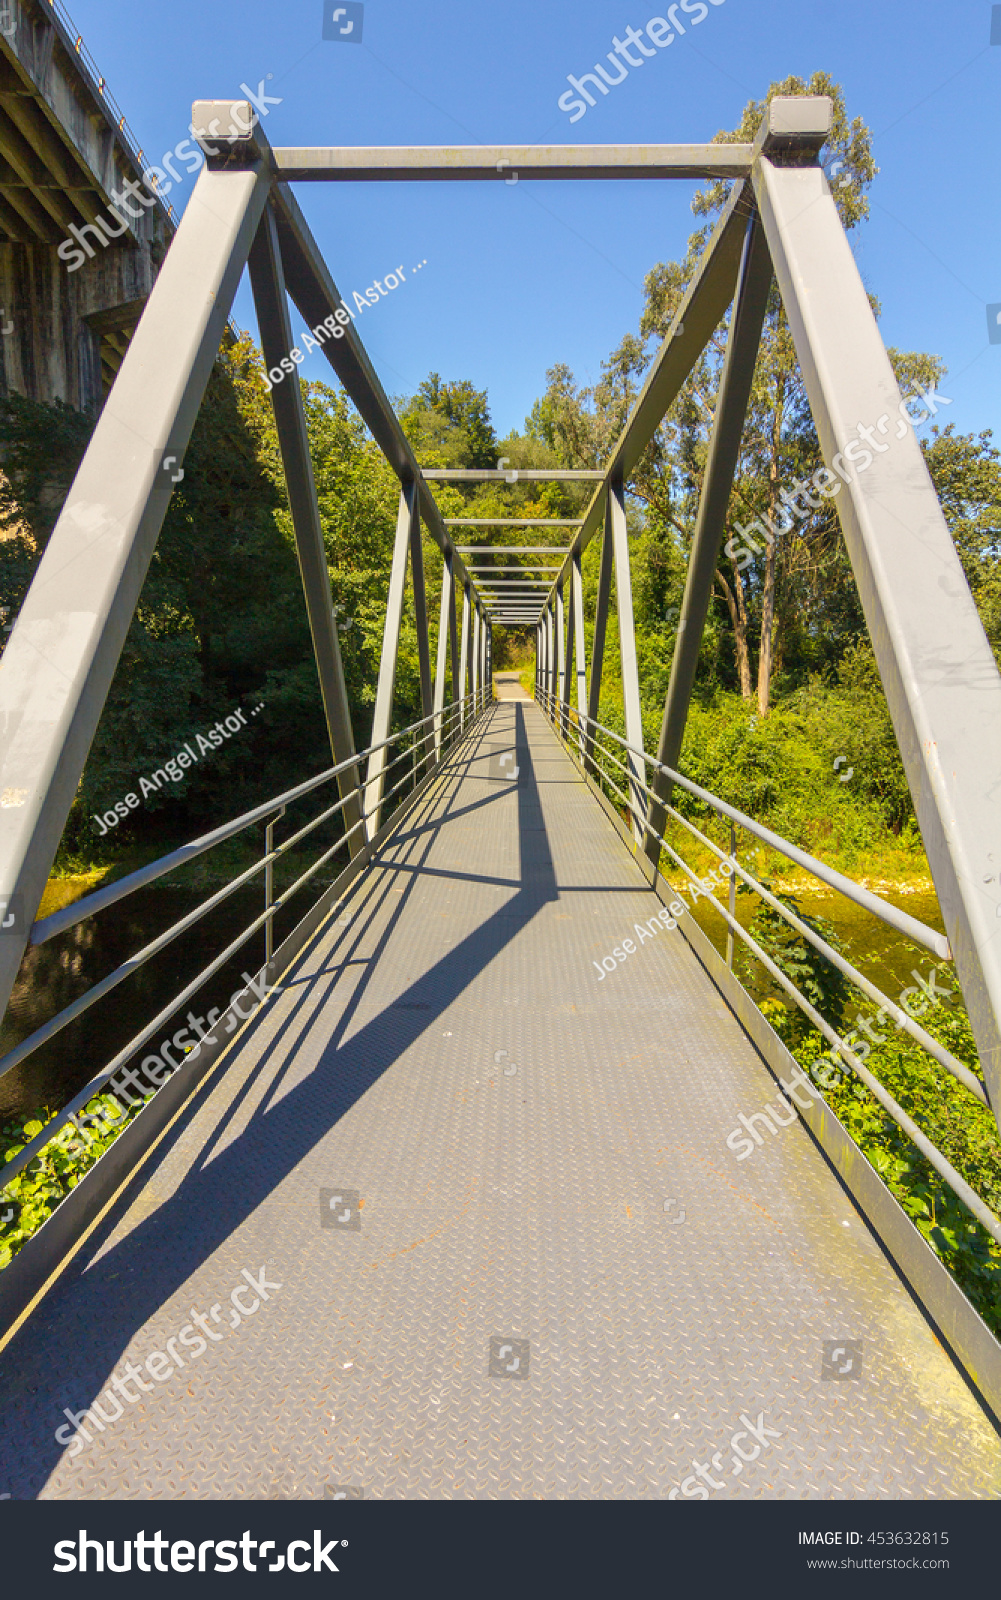 Modern Small Footbridge Iron Stock Photo 453632815 : Shutterstock